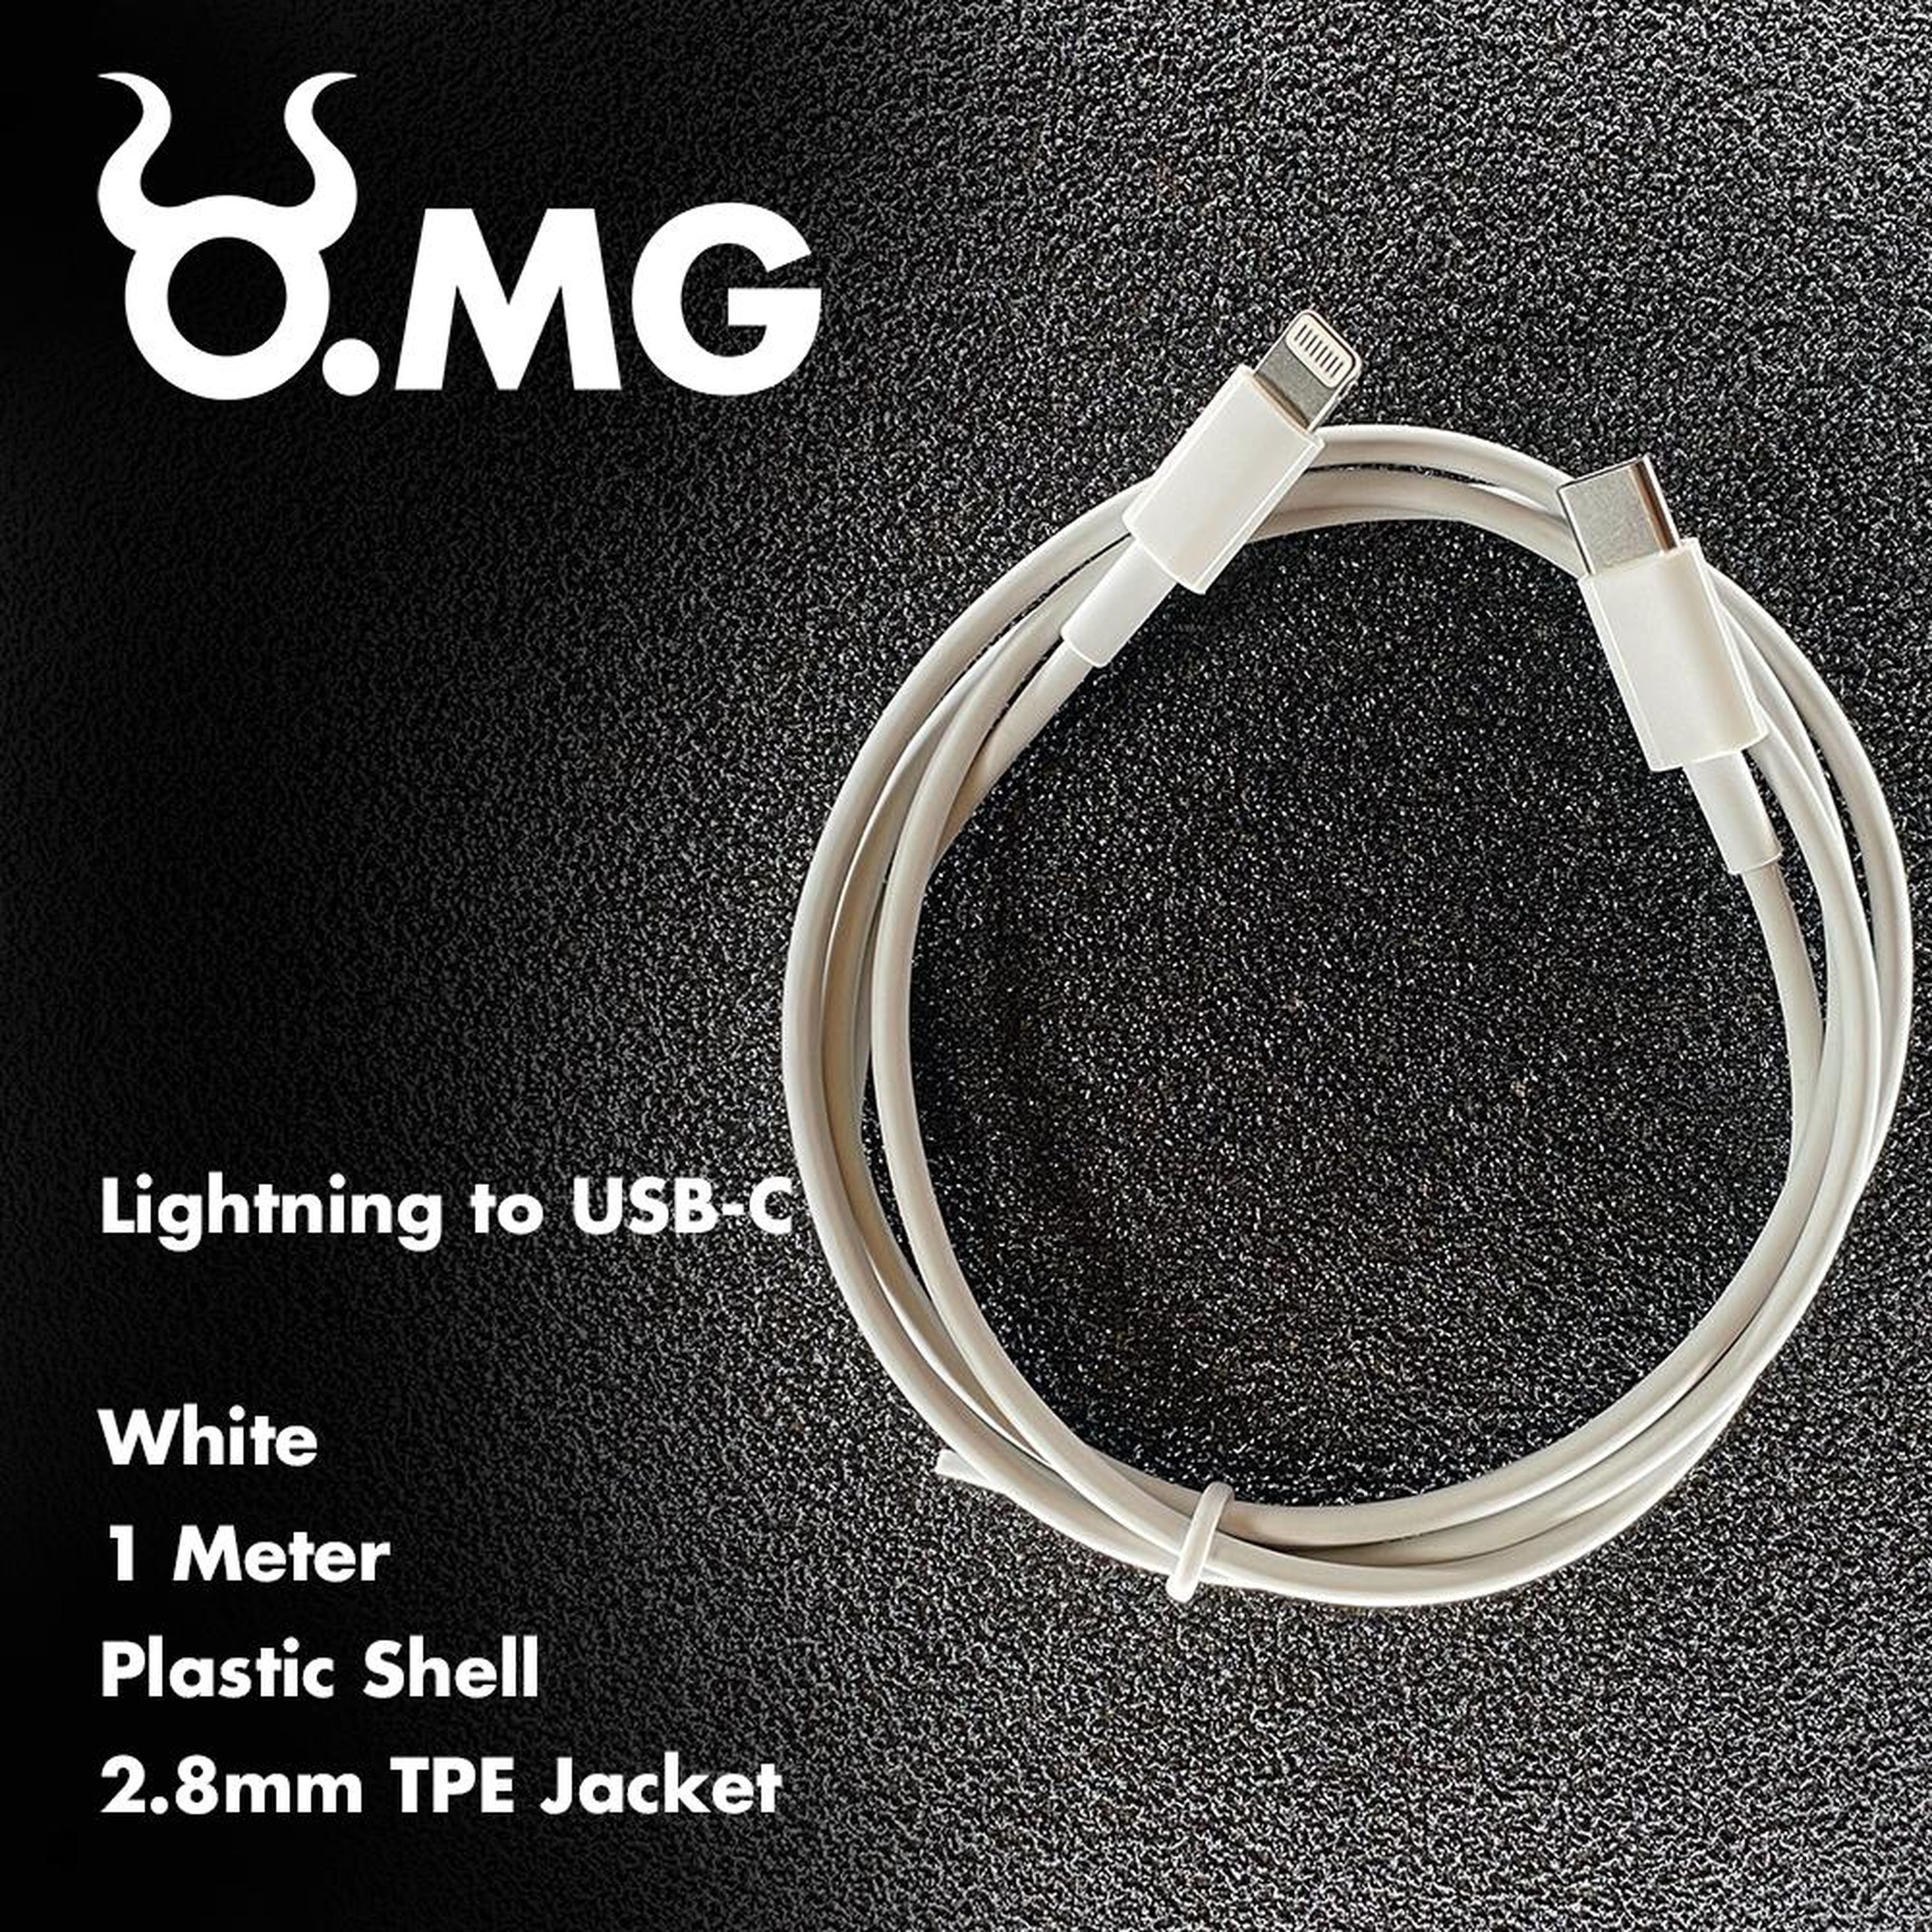 Cable O.MG que simula ser un adaptador Lightning a USB-C.